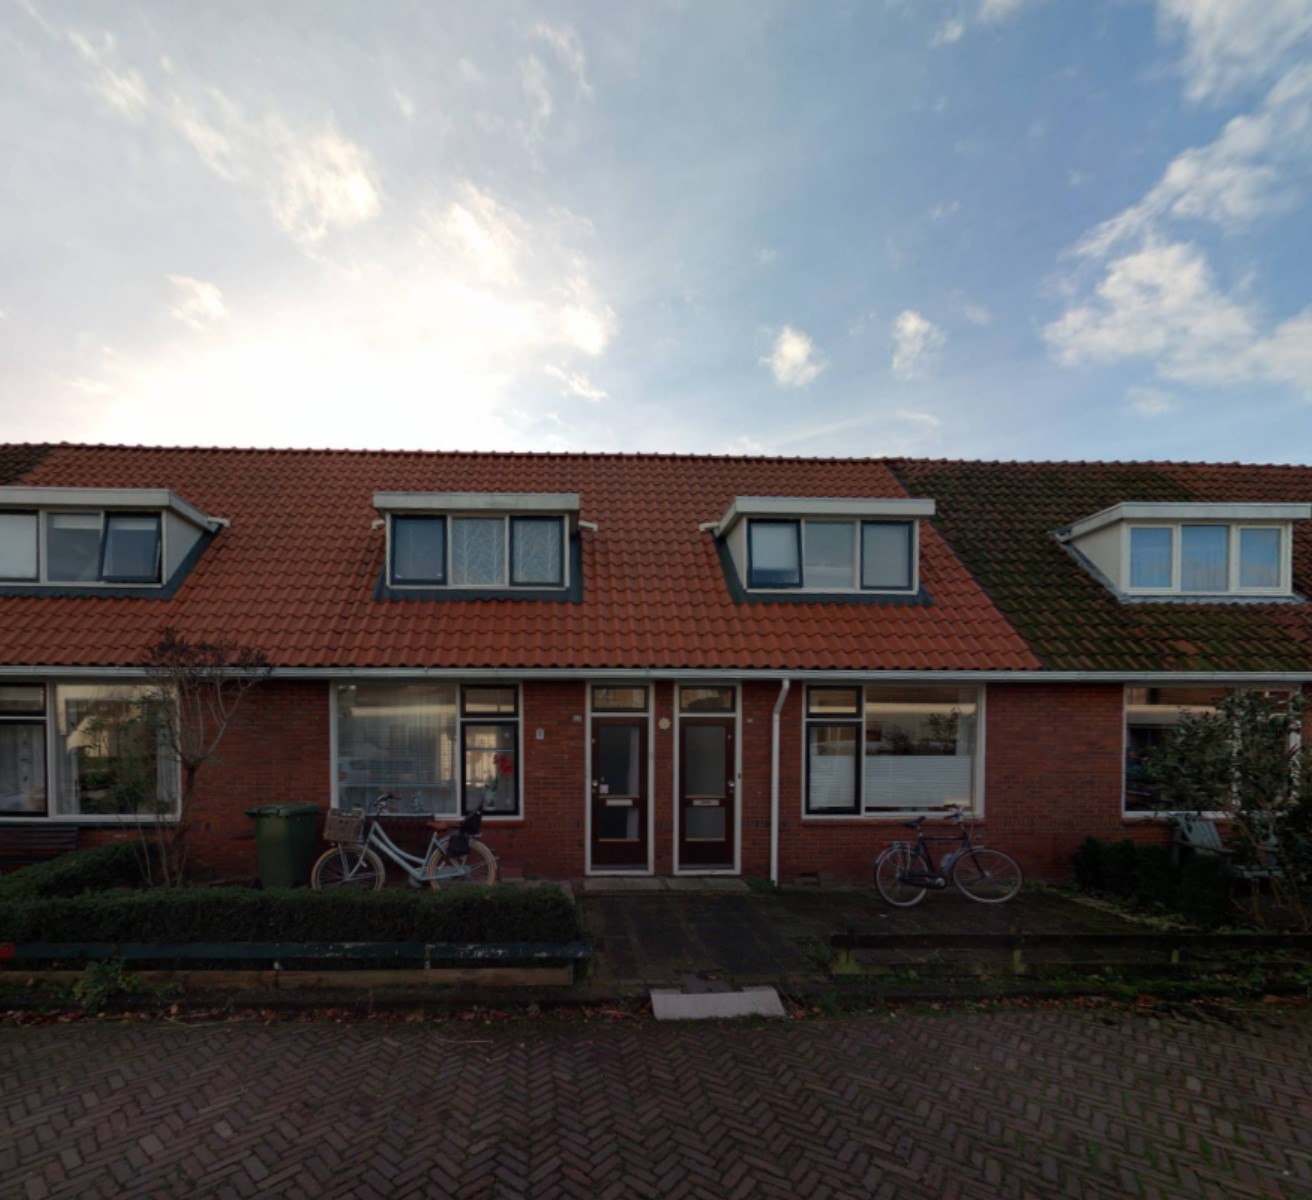 Van Loonstraat 55, 8932 AN Leeuwarden, Nederland